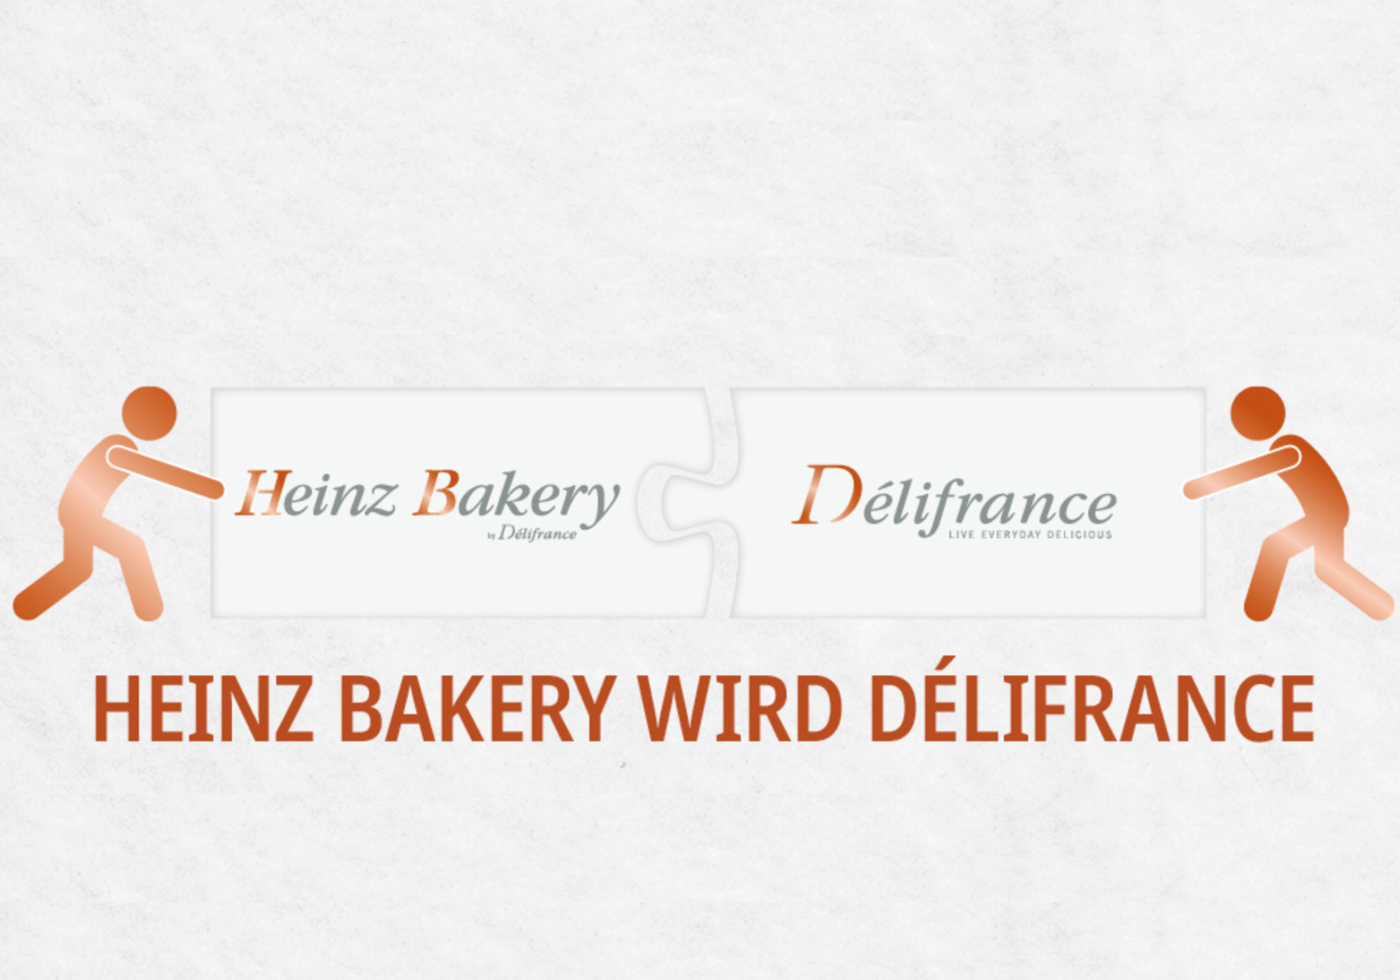 Délifrance  integriert Tochter Heinz Bakery